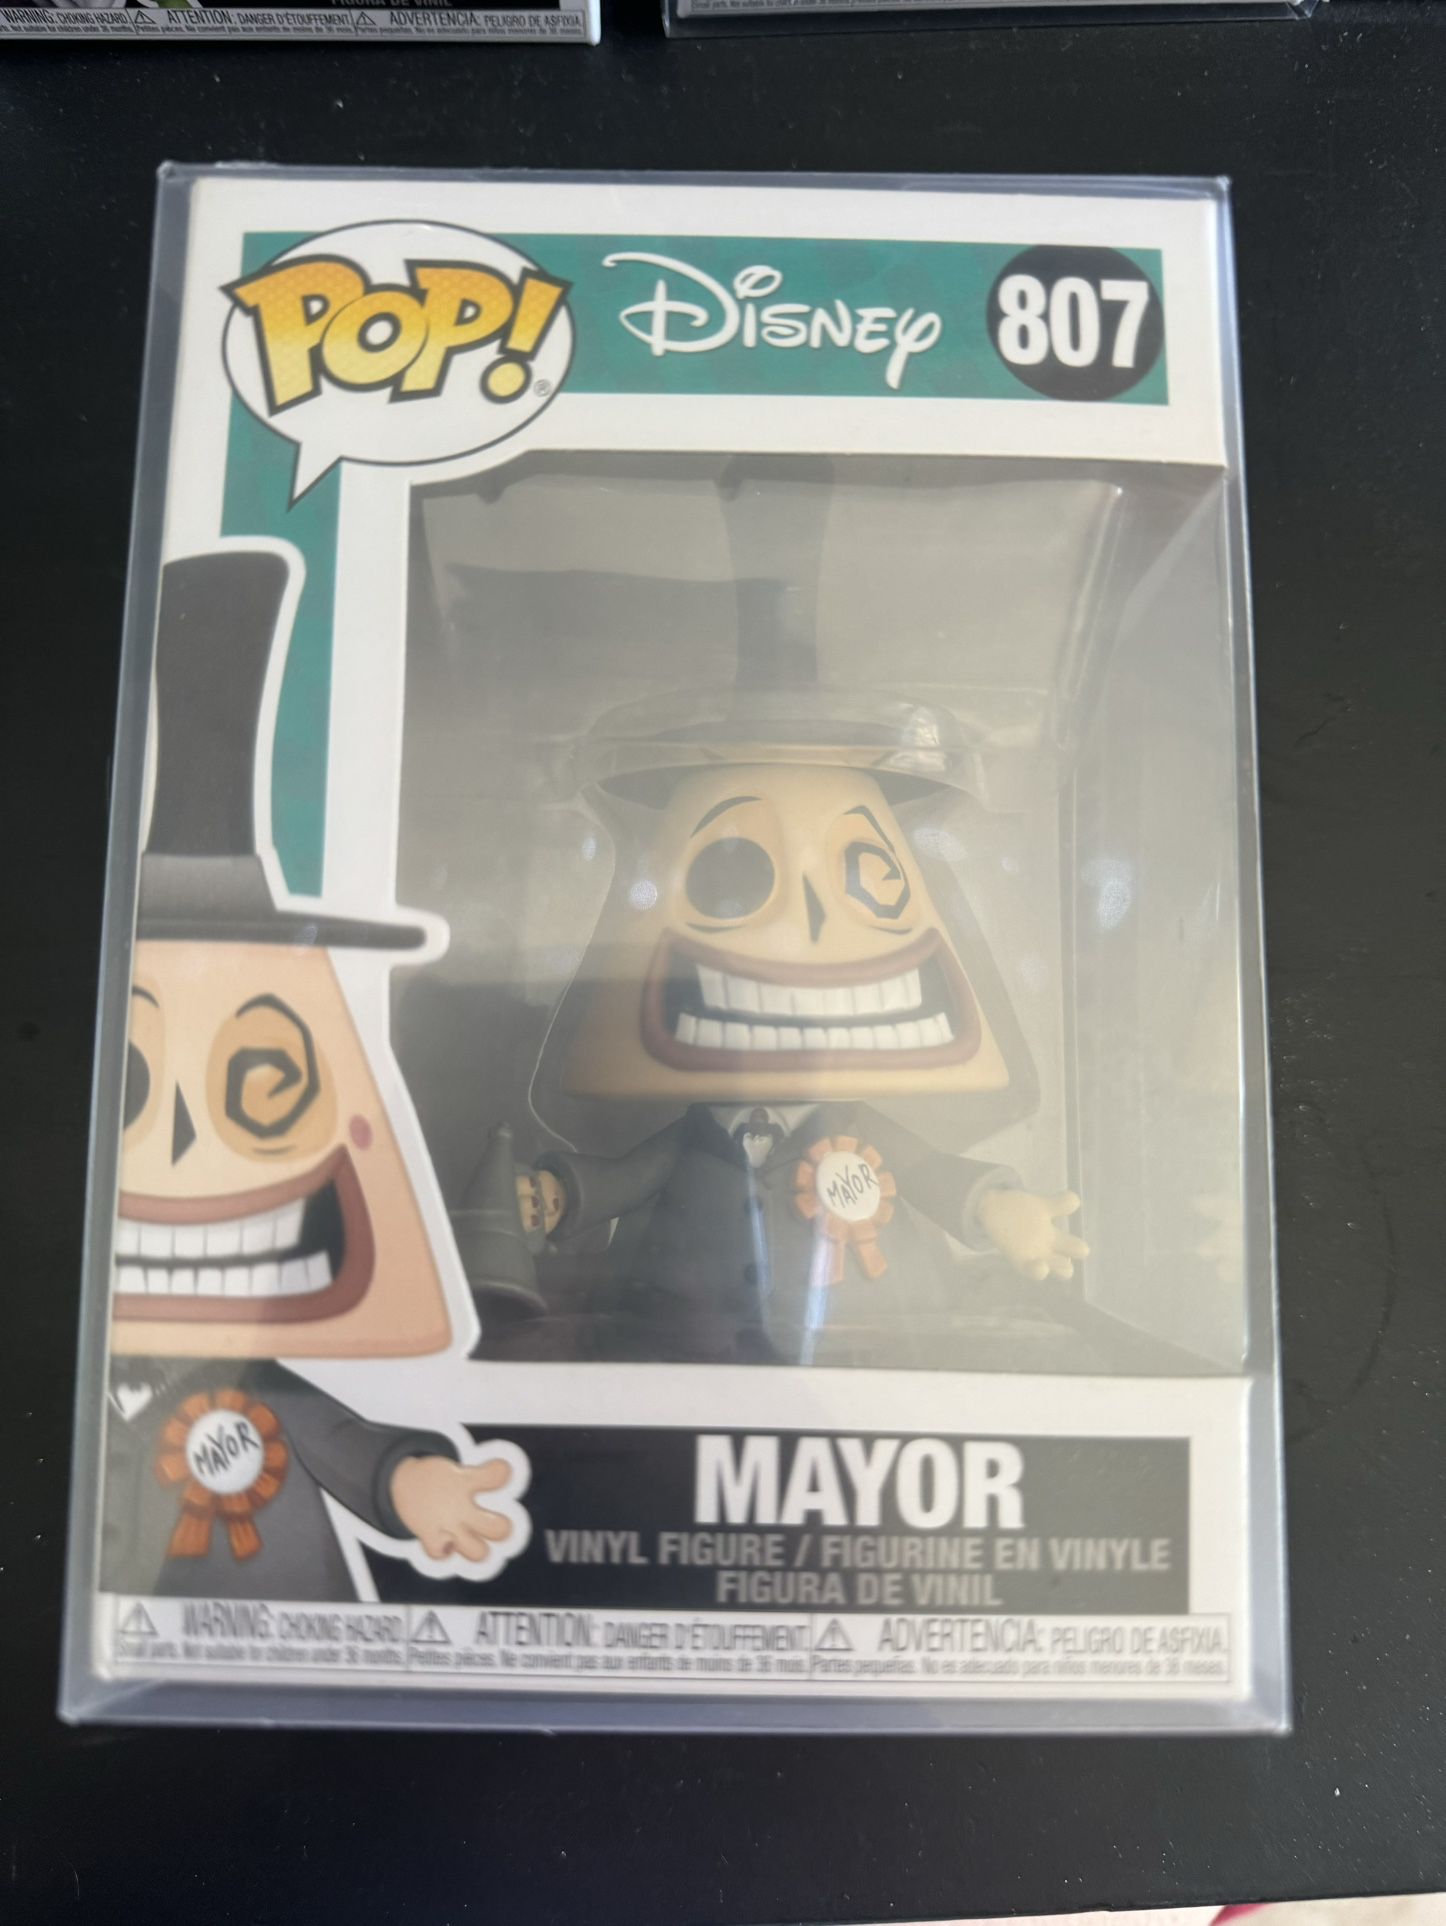 Mayor Nightmare Before Christmas 807